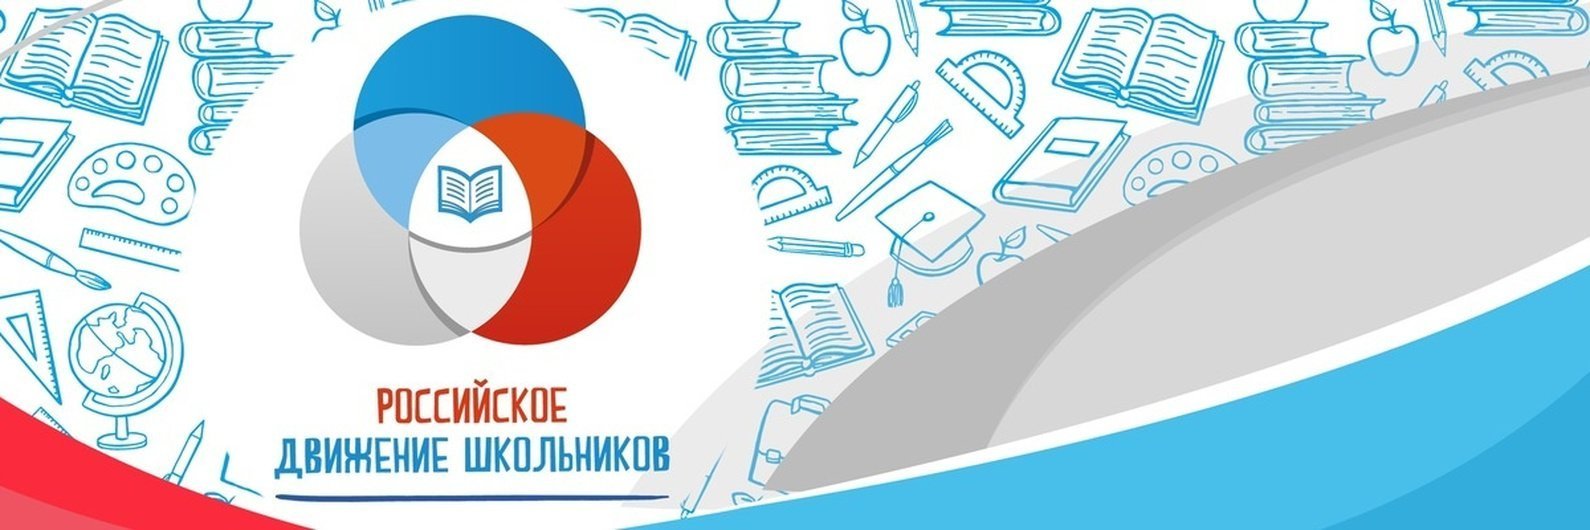 Логотип российское движение школьников на прозрачном фоне фото